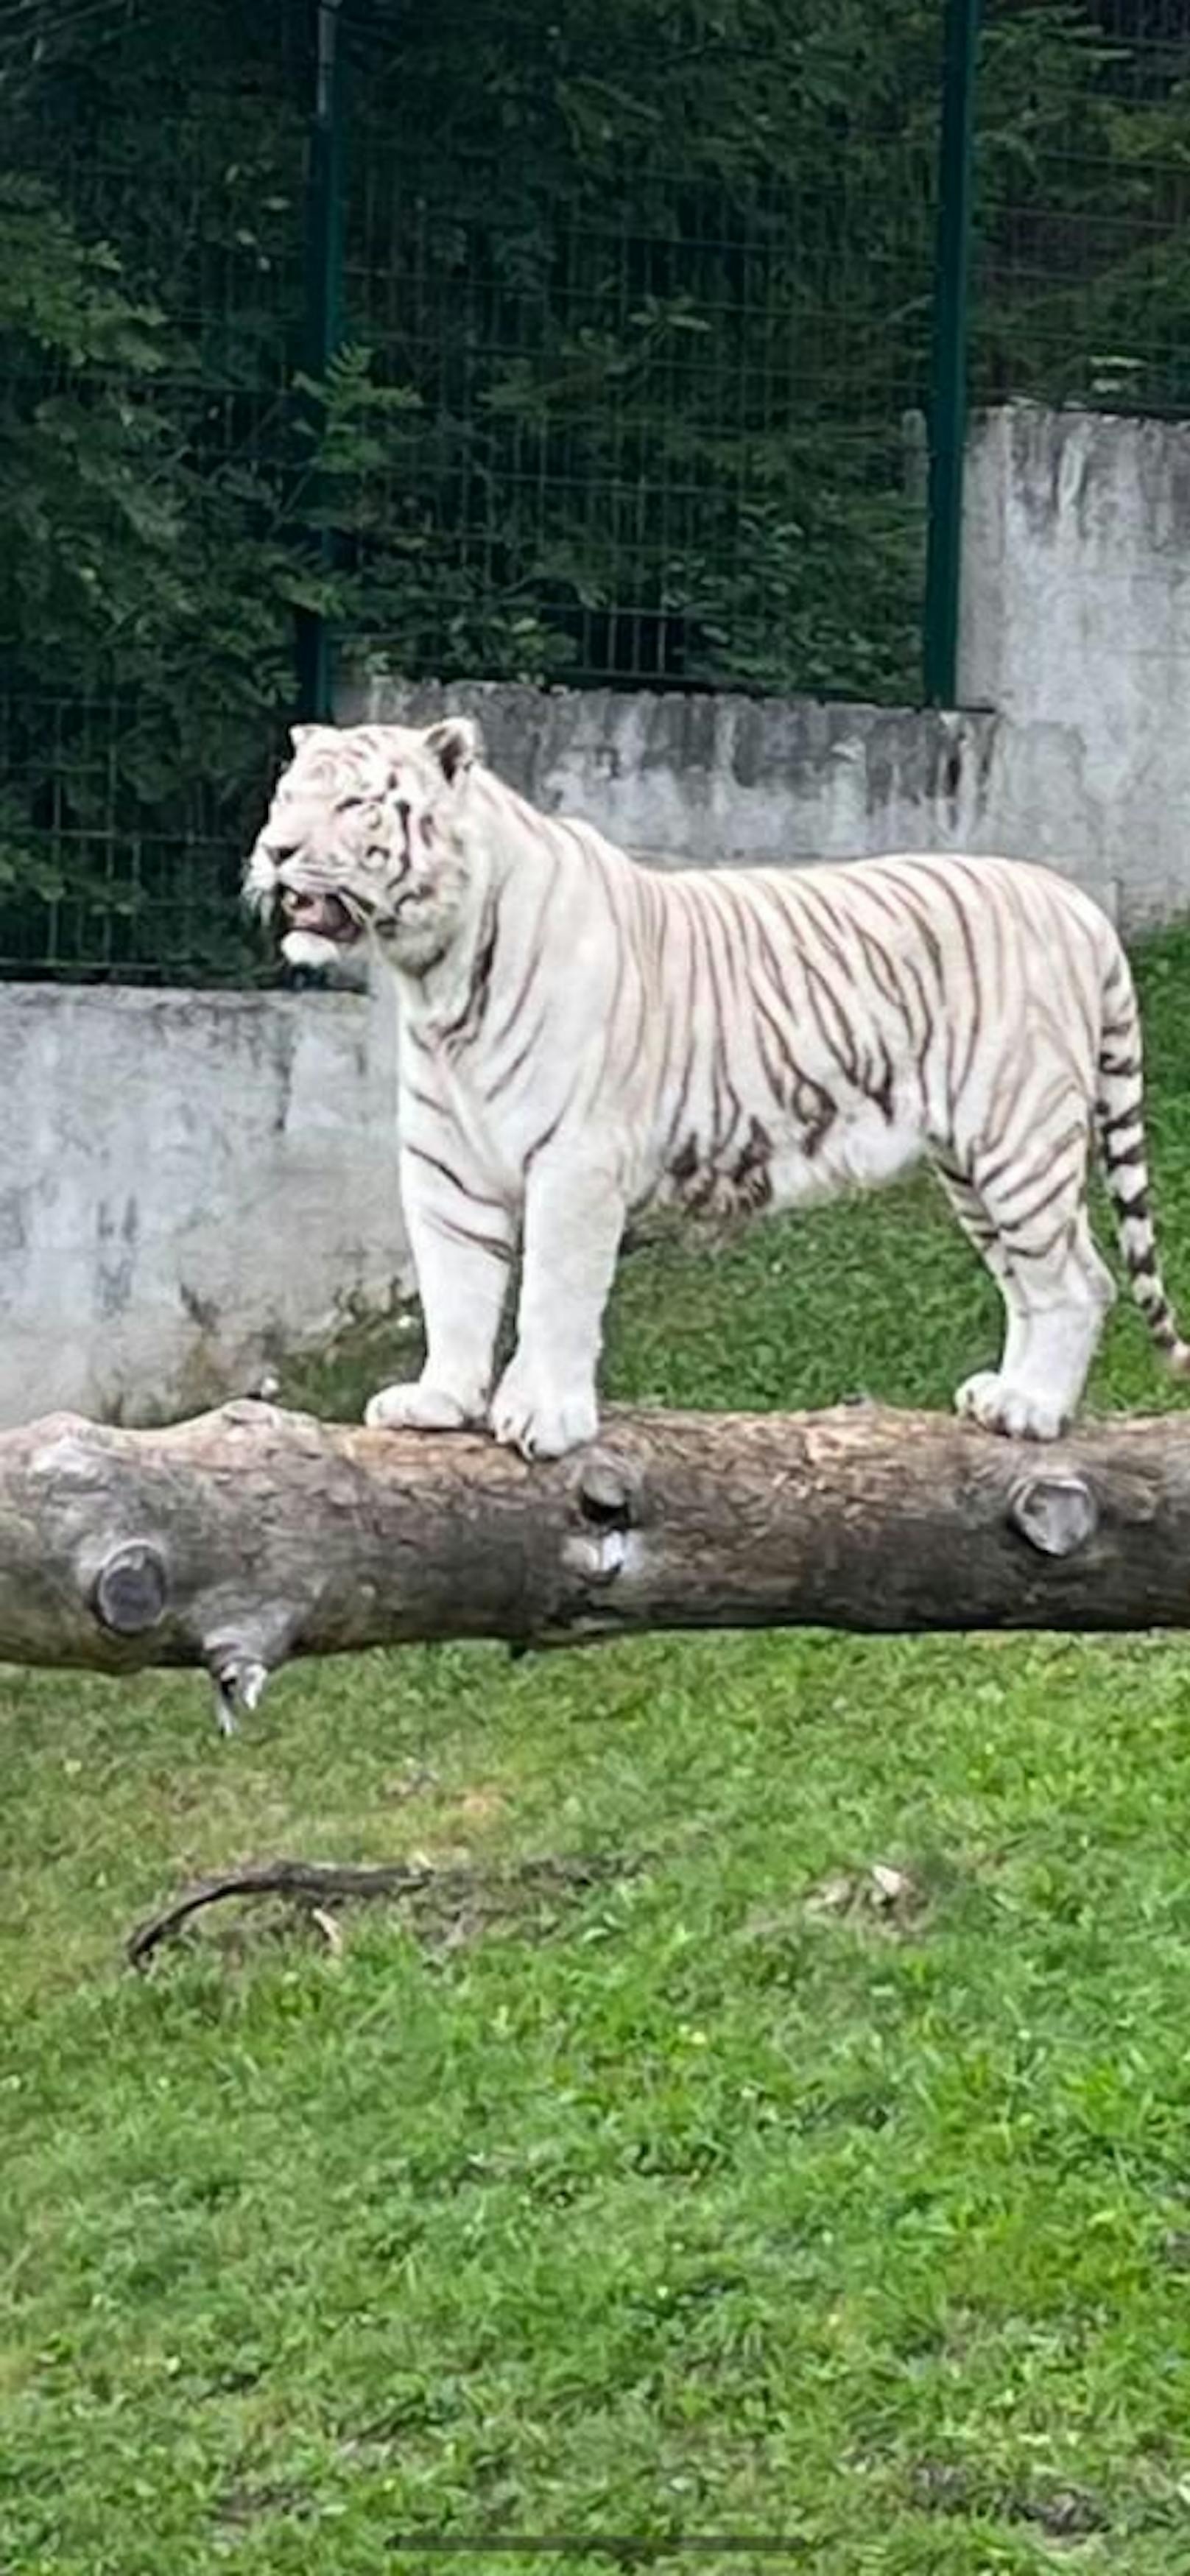 König des Zoos: Der weiße Tiger (Bengal)